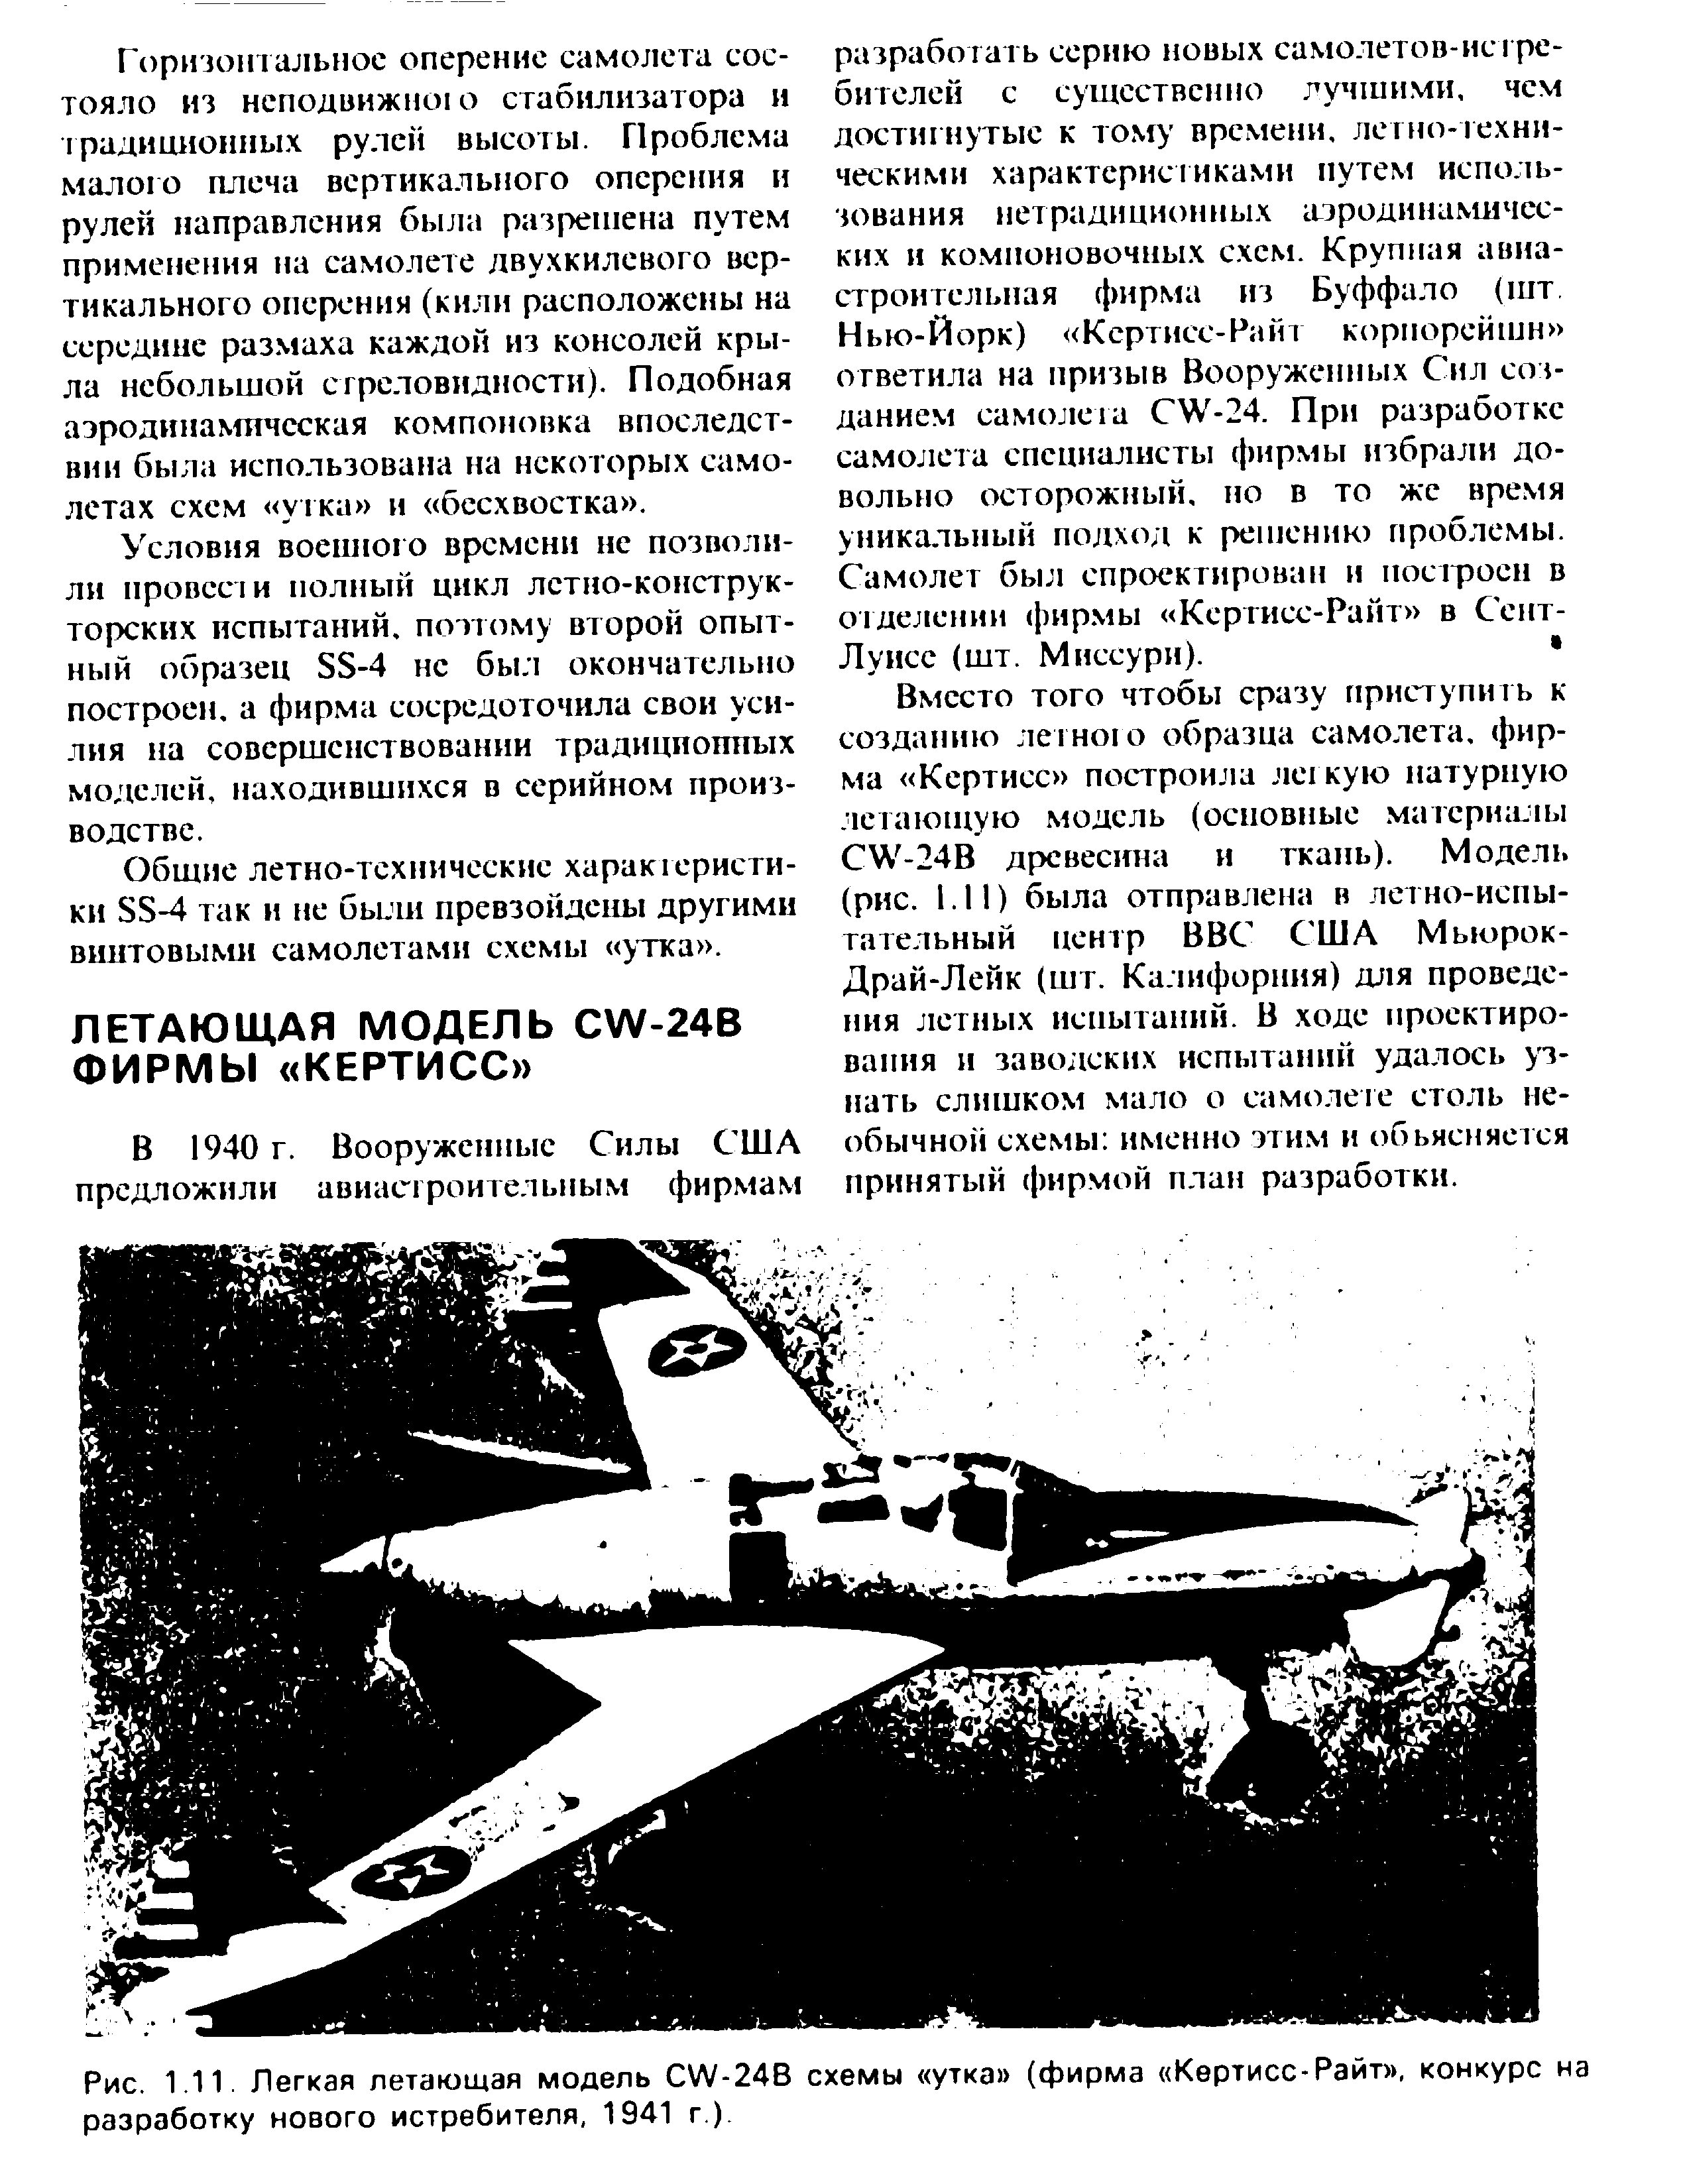 Рис. 1.11. Легкая летающая модель W-24B схемы утка (<a href="/info/724768">фирма Кертисс-Райт</a> , конкурс на разработку нового истребителя, 1941 г.).
